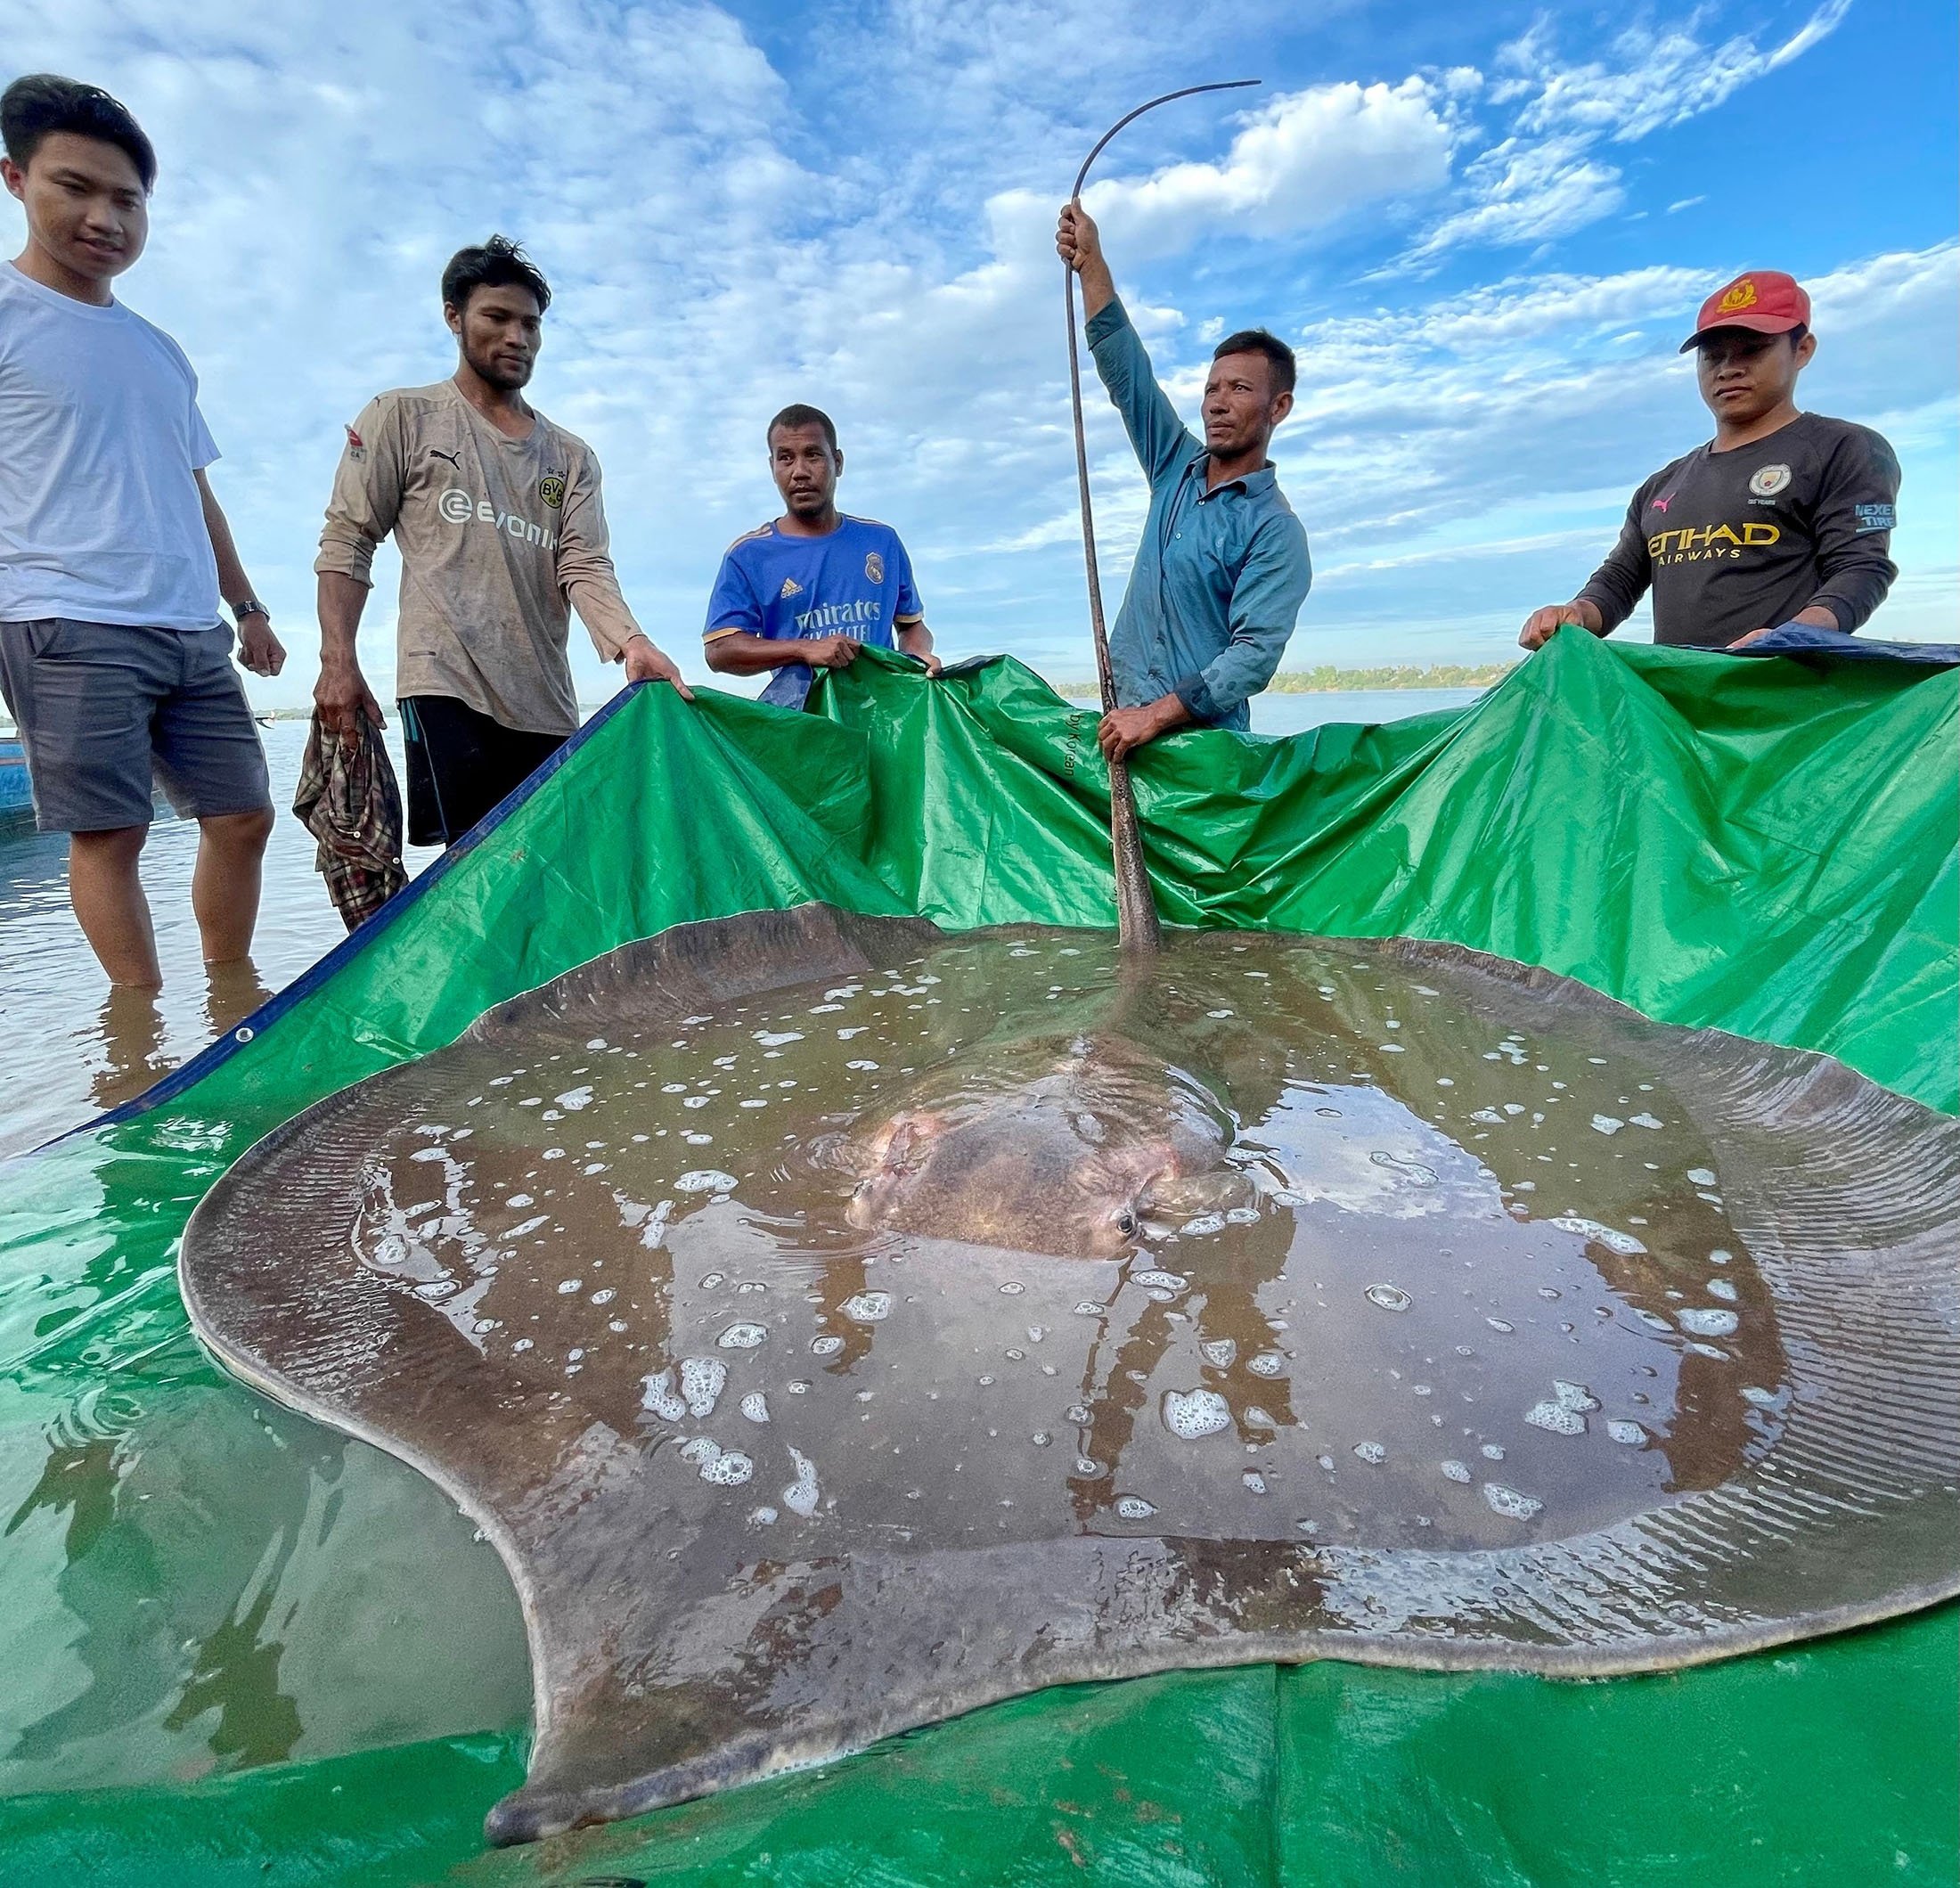 Undersea giant: Fishermen accidentally hook giant endangered